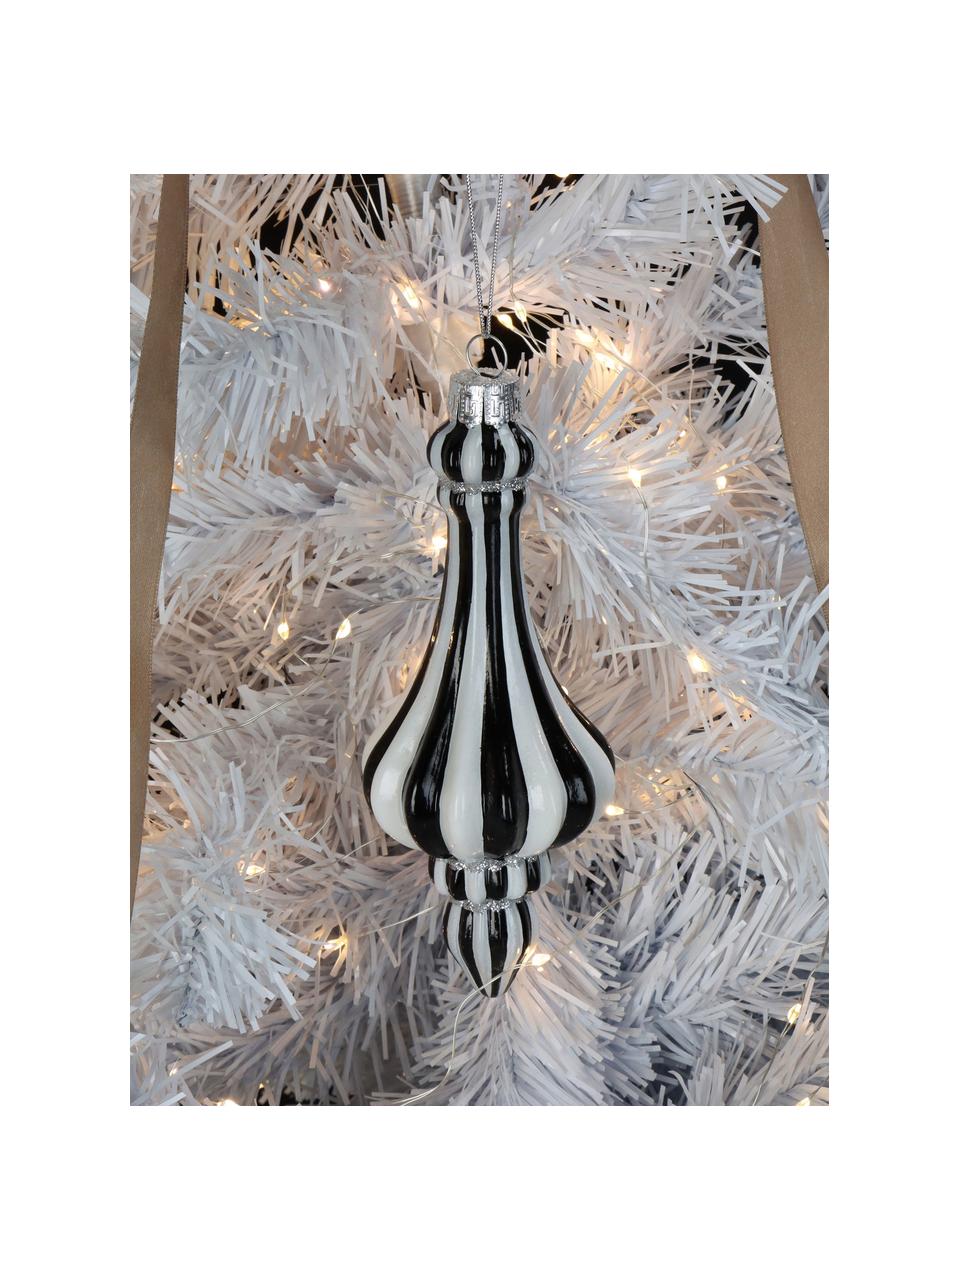 Kerstboomhanger Stripe  in organische vorm, Glas, Zwart, wit, Ø 7 x H 15 cm